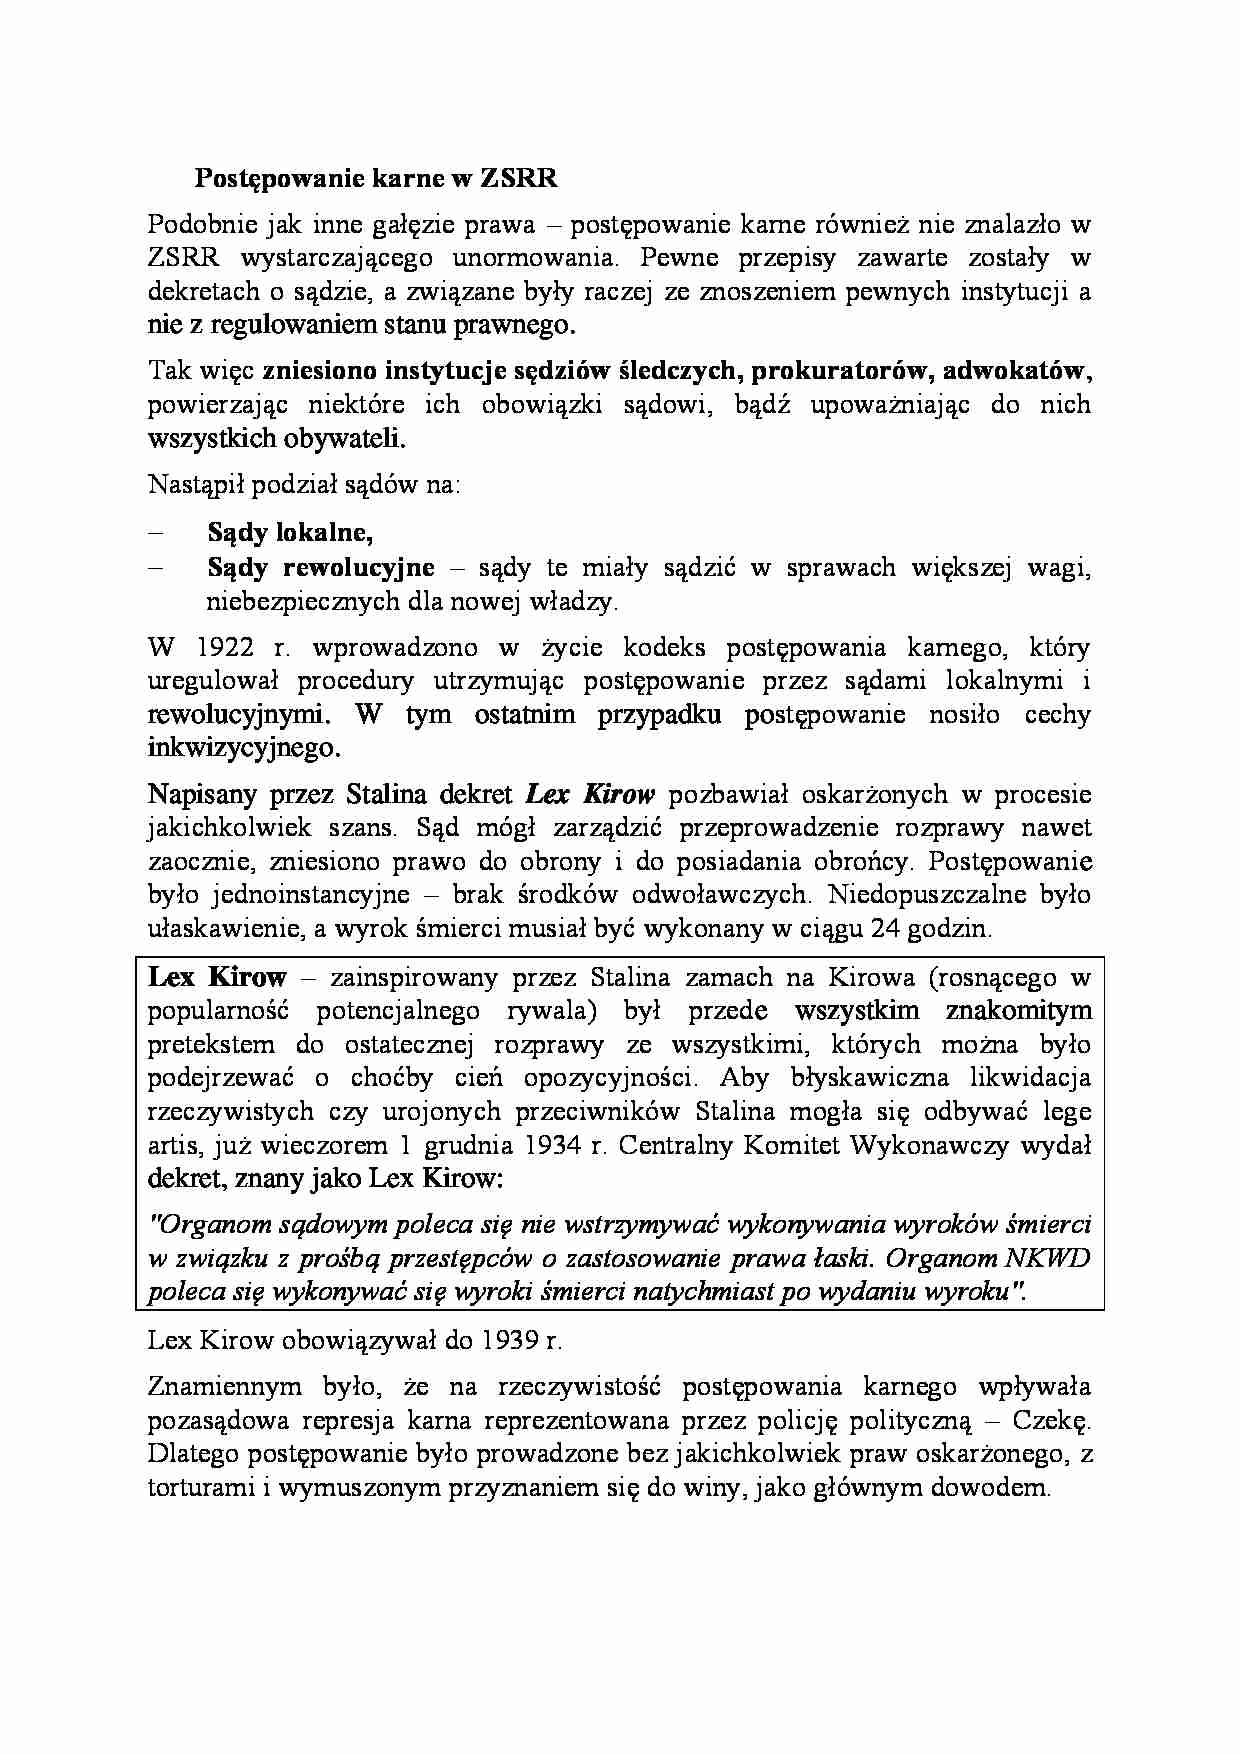 Postępowanie karne w ZSRR-opracowanie - strona 1